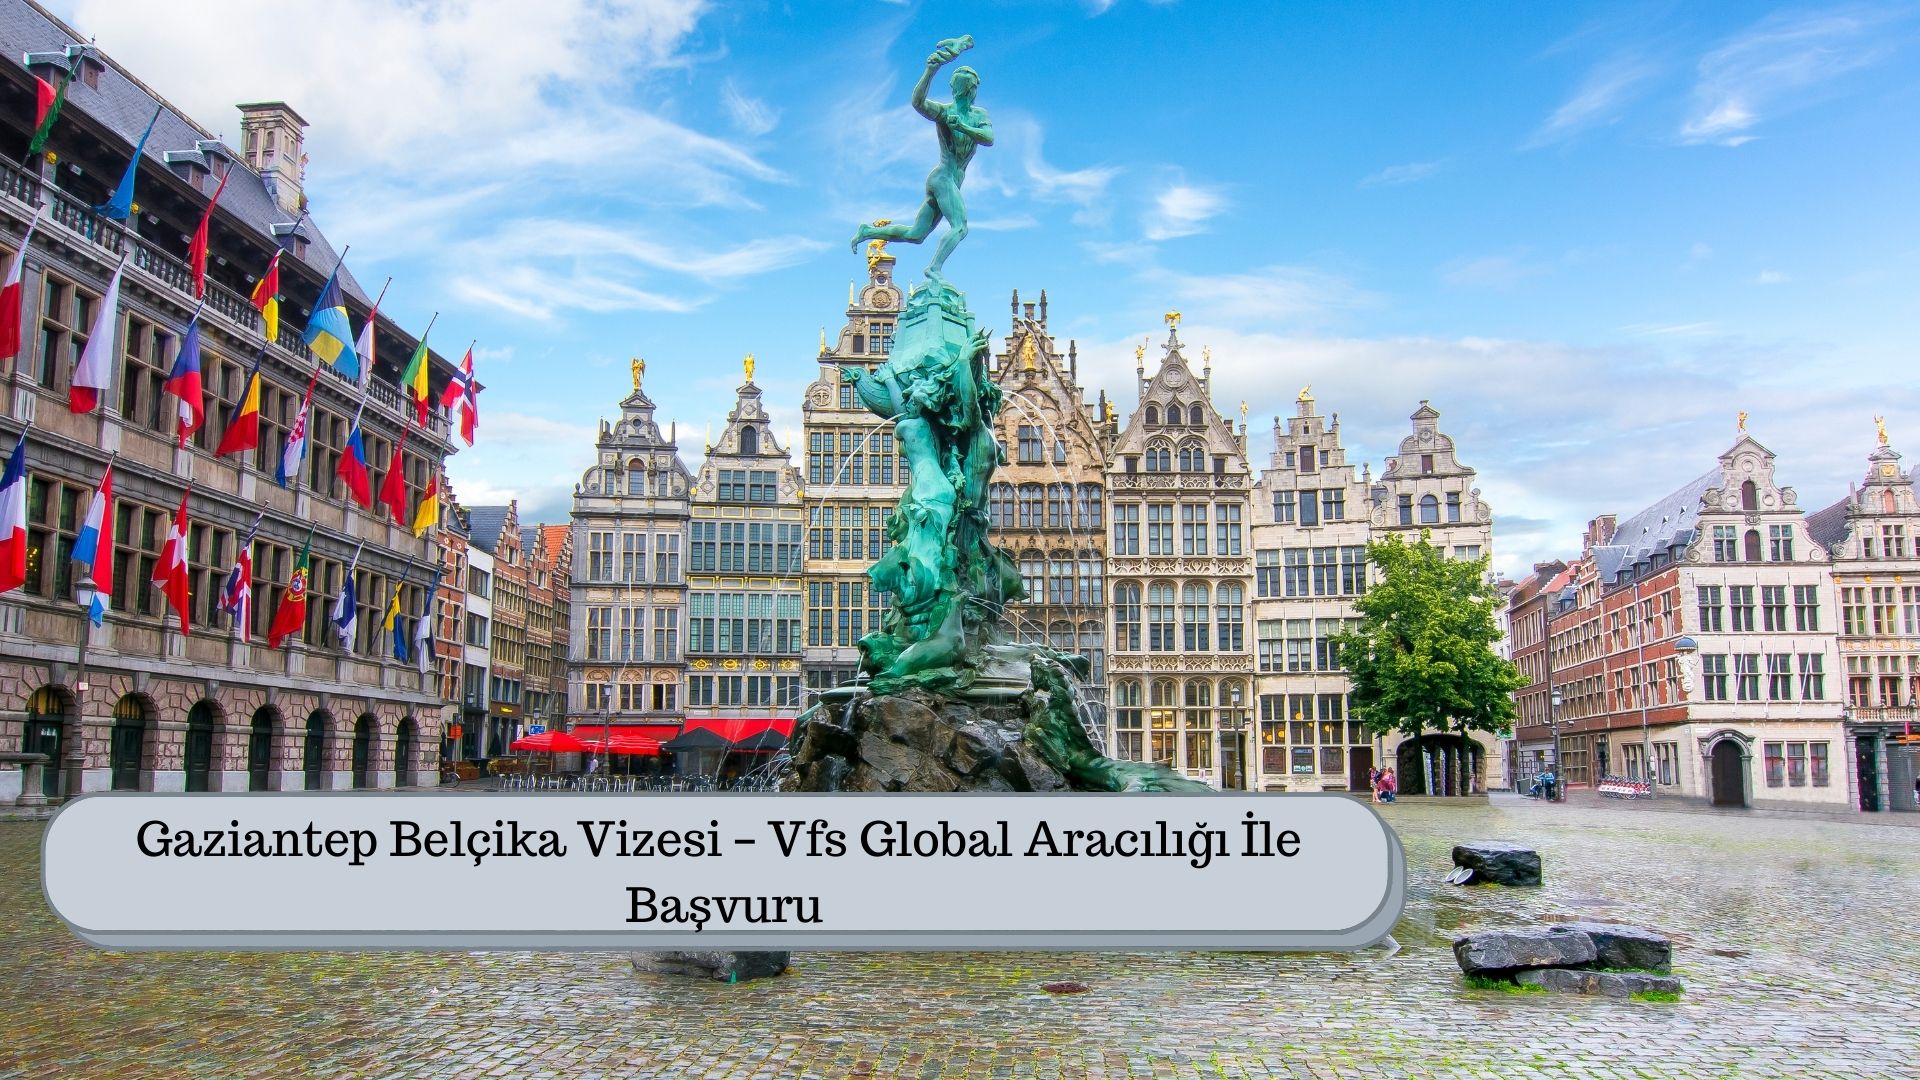 Gaziantep Belçika Vizesi – Vfs Global Aracılığı İle Başvuru